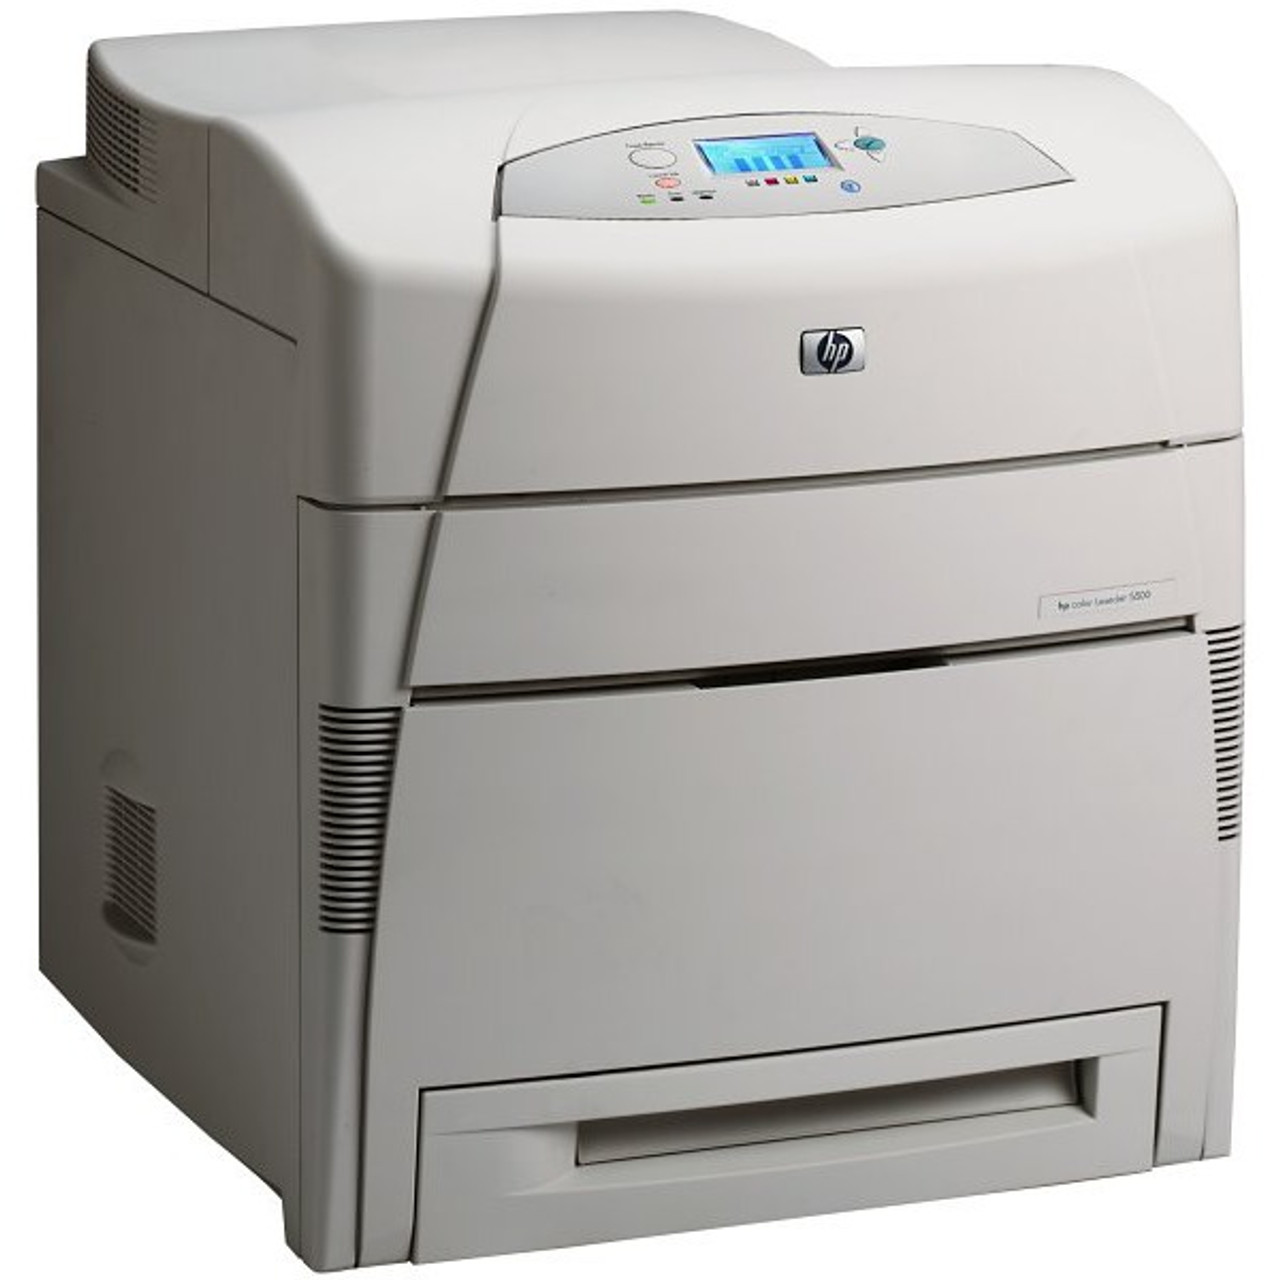 HP Color LaserJet 5500 - C9656A